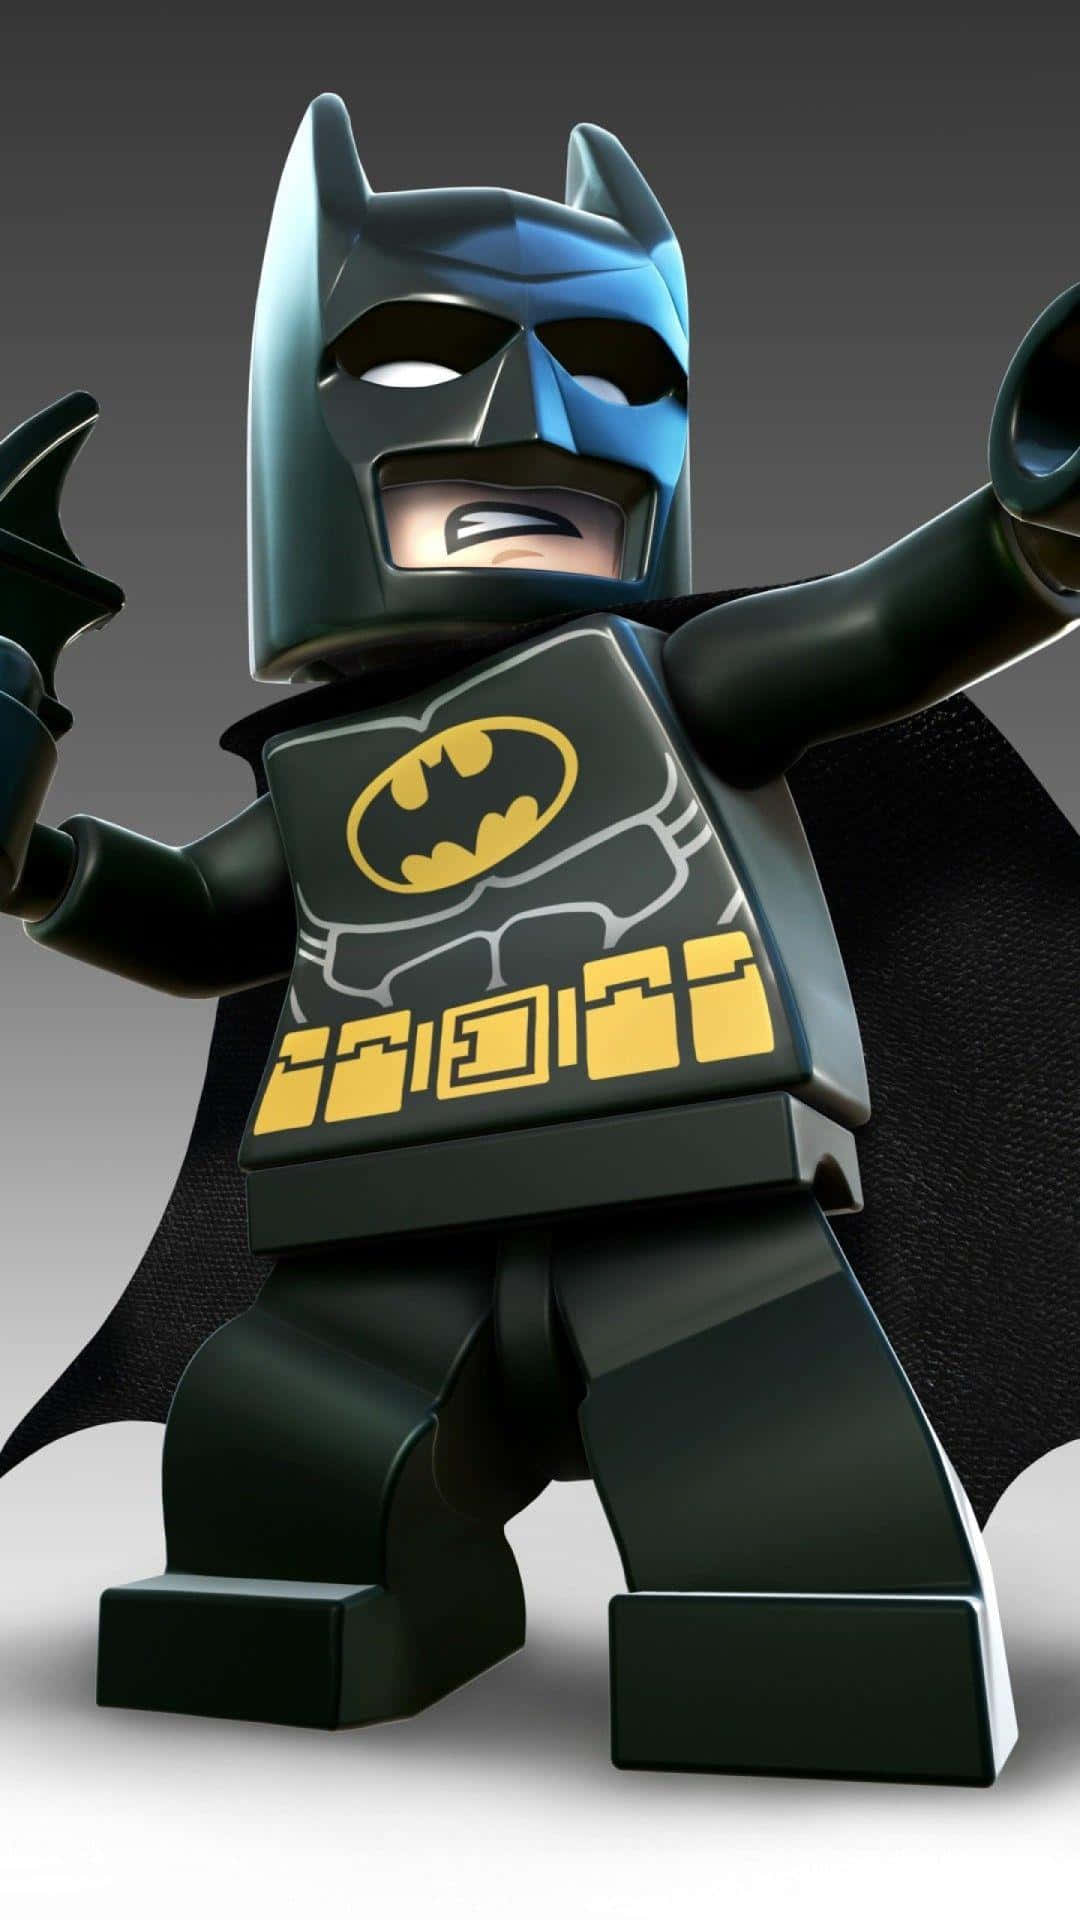 Batman Android Lego Digital Art Wallpaper